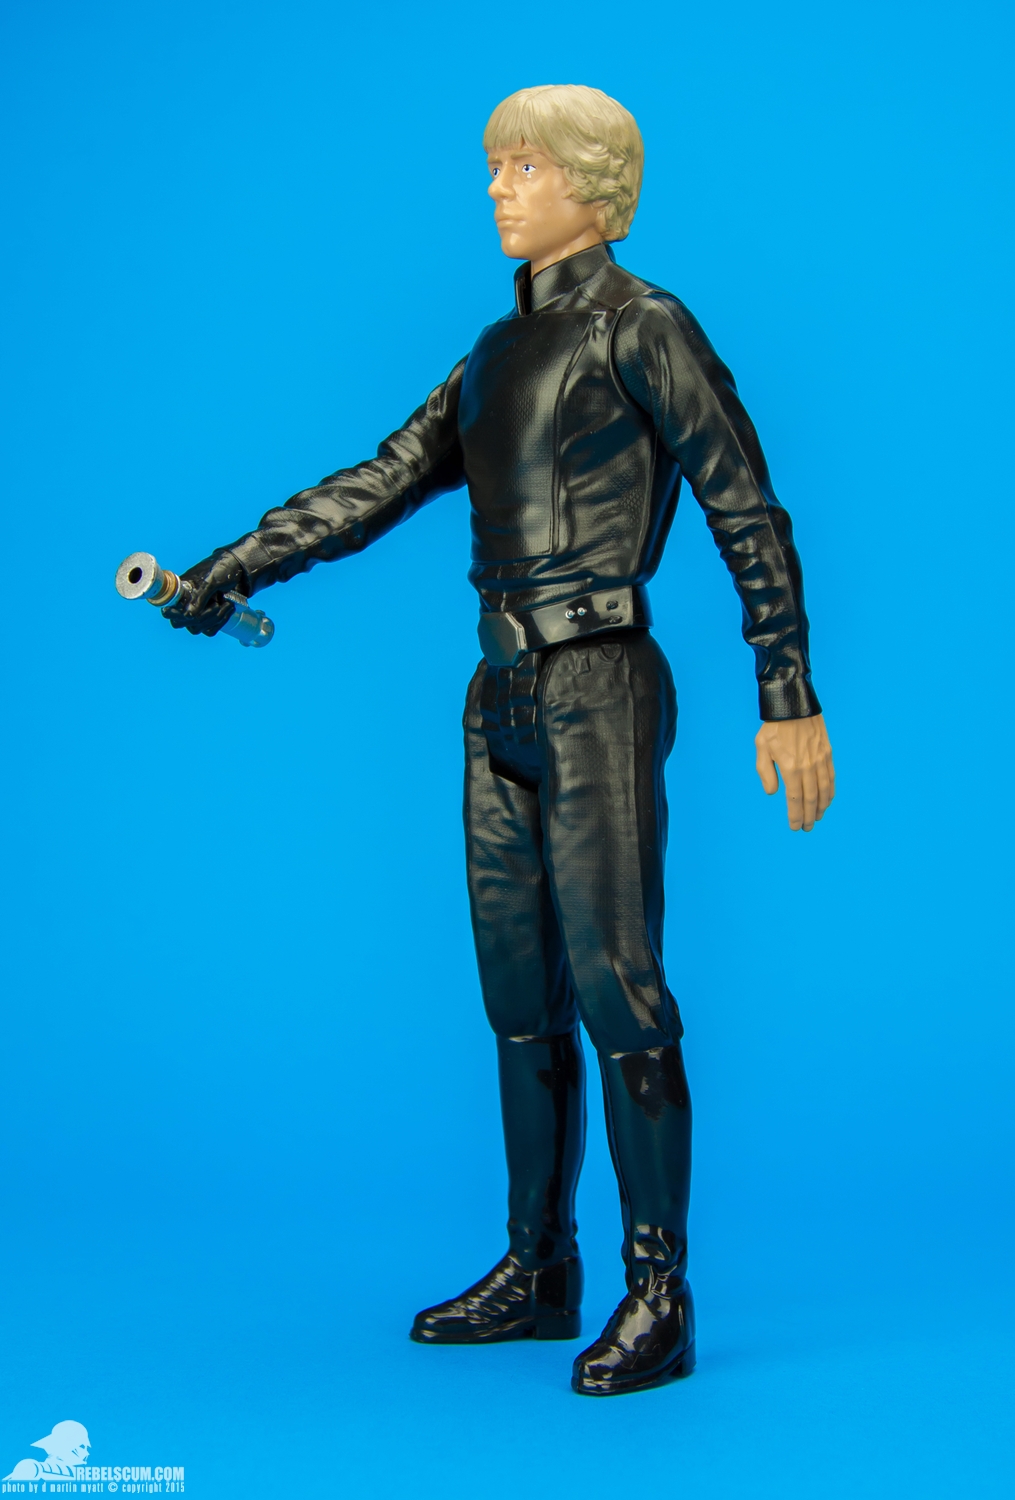 Luke-Skywalker-2014-Star-Wars-12-Inch-Figure-003.jpg